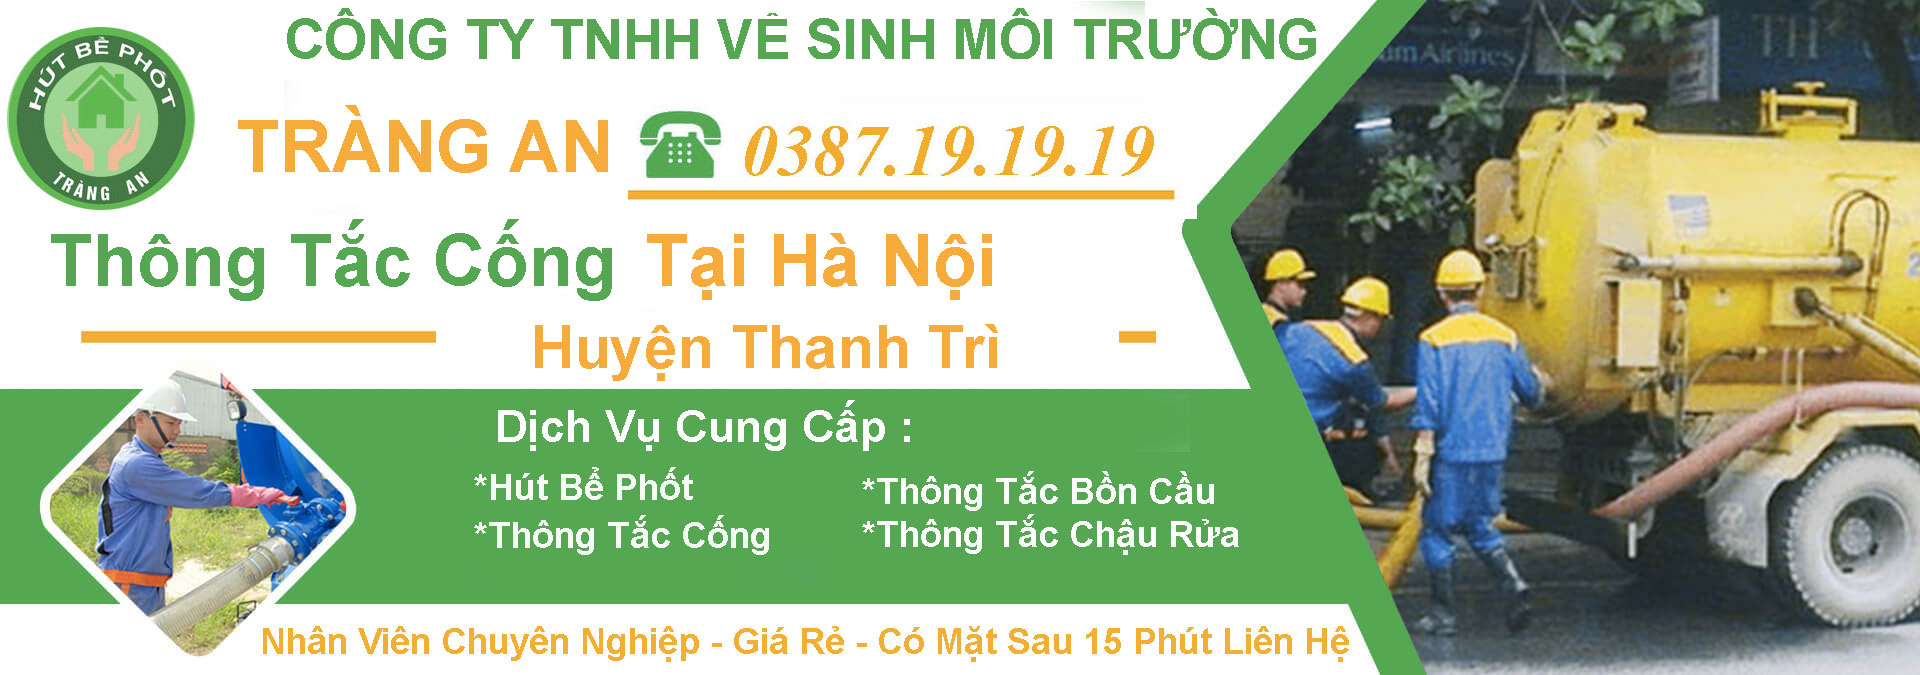 Thong Tac Cong Ha Noi Thanh Tri